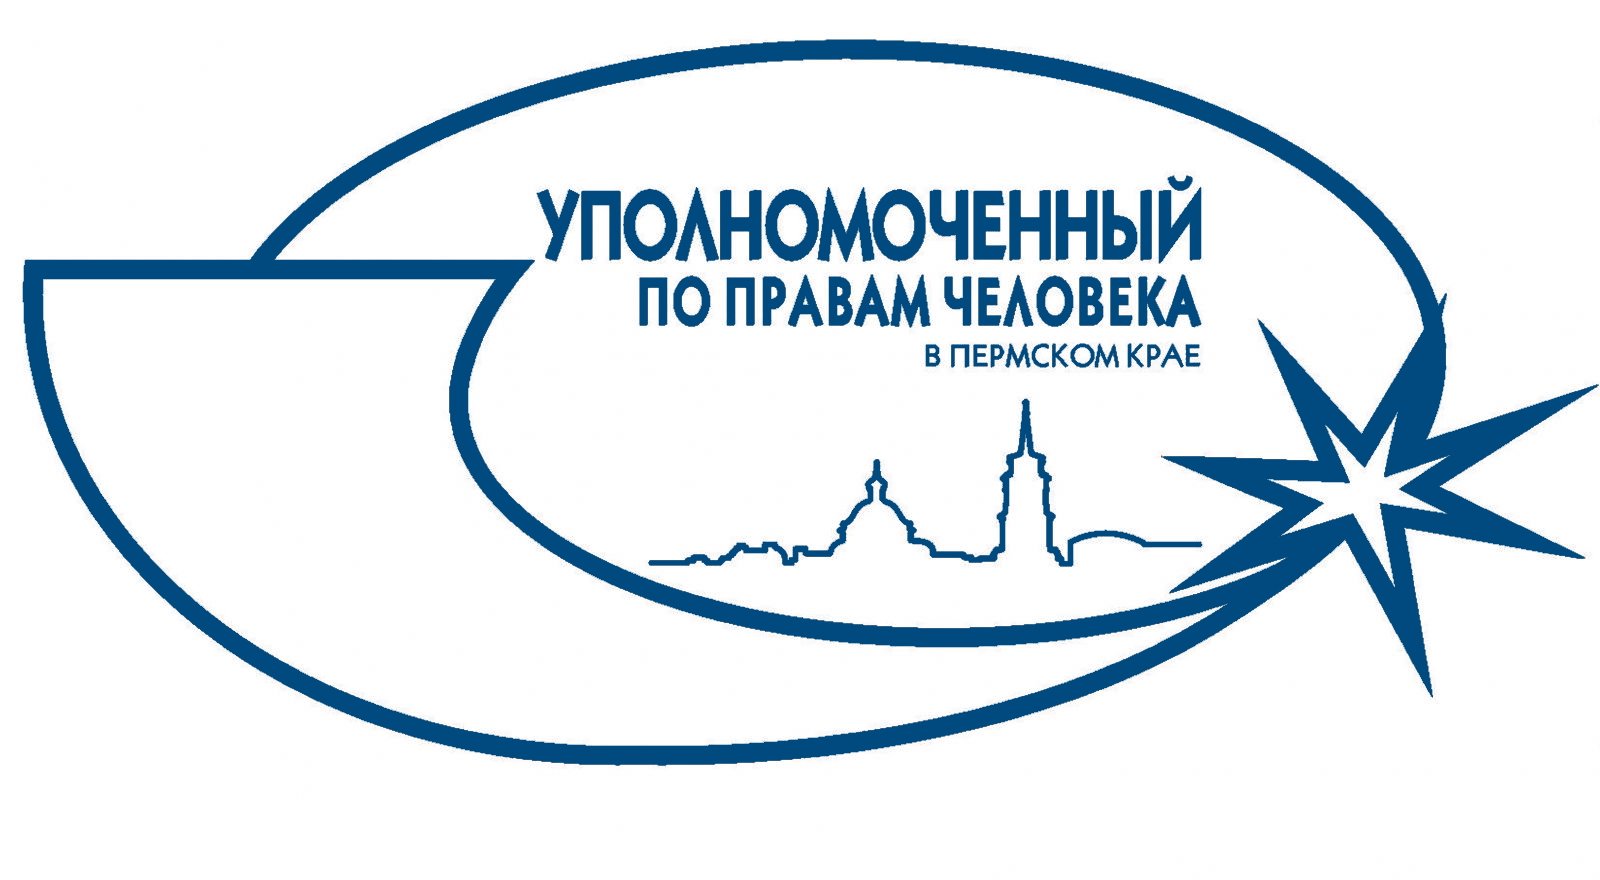 По требованию Уполномоченного по правам человека в Пермском крае приняты меры по созданию надлежащих условий в следственном изоляторе №5 города Перми.